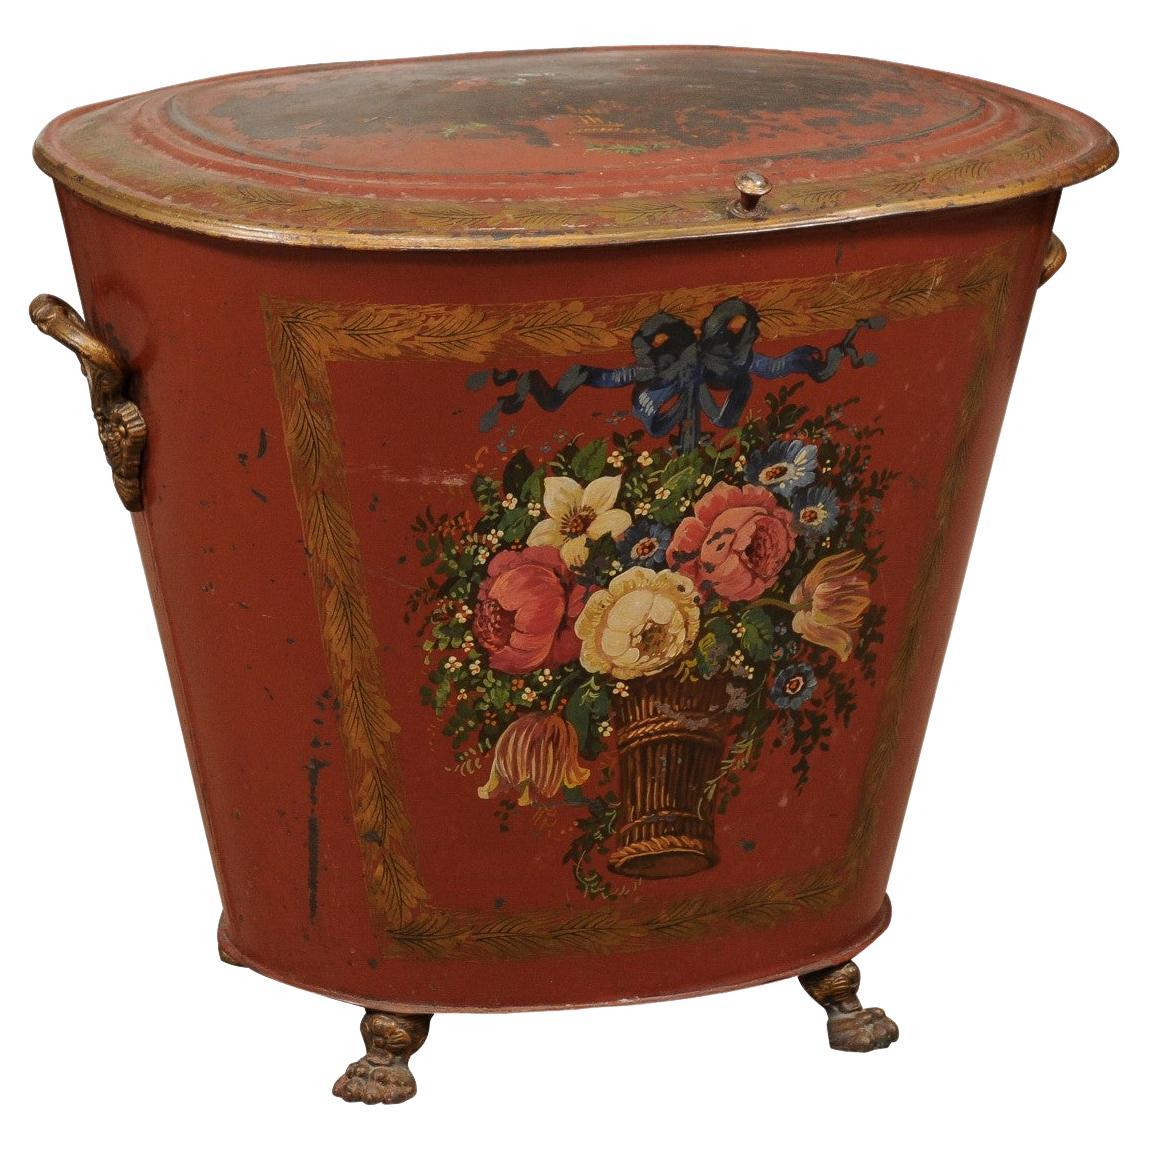 Englische rot bemalte Kohle Hod aus dem 19. Jahrhundert mit Blumendekoration